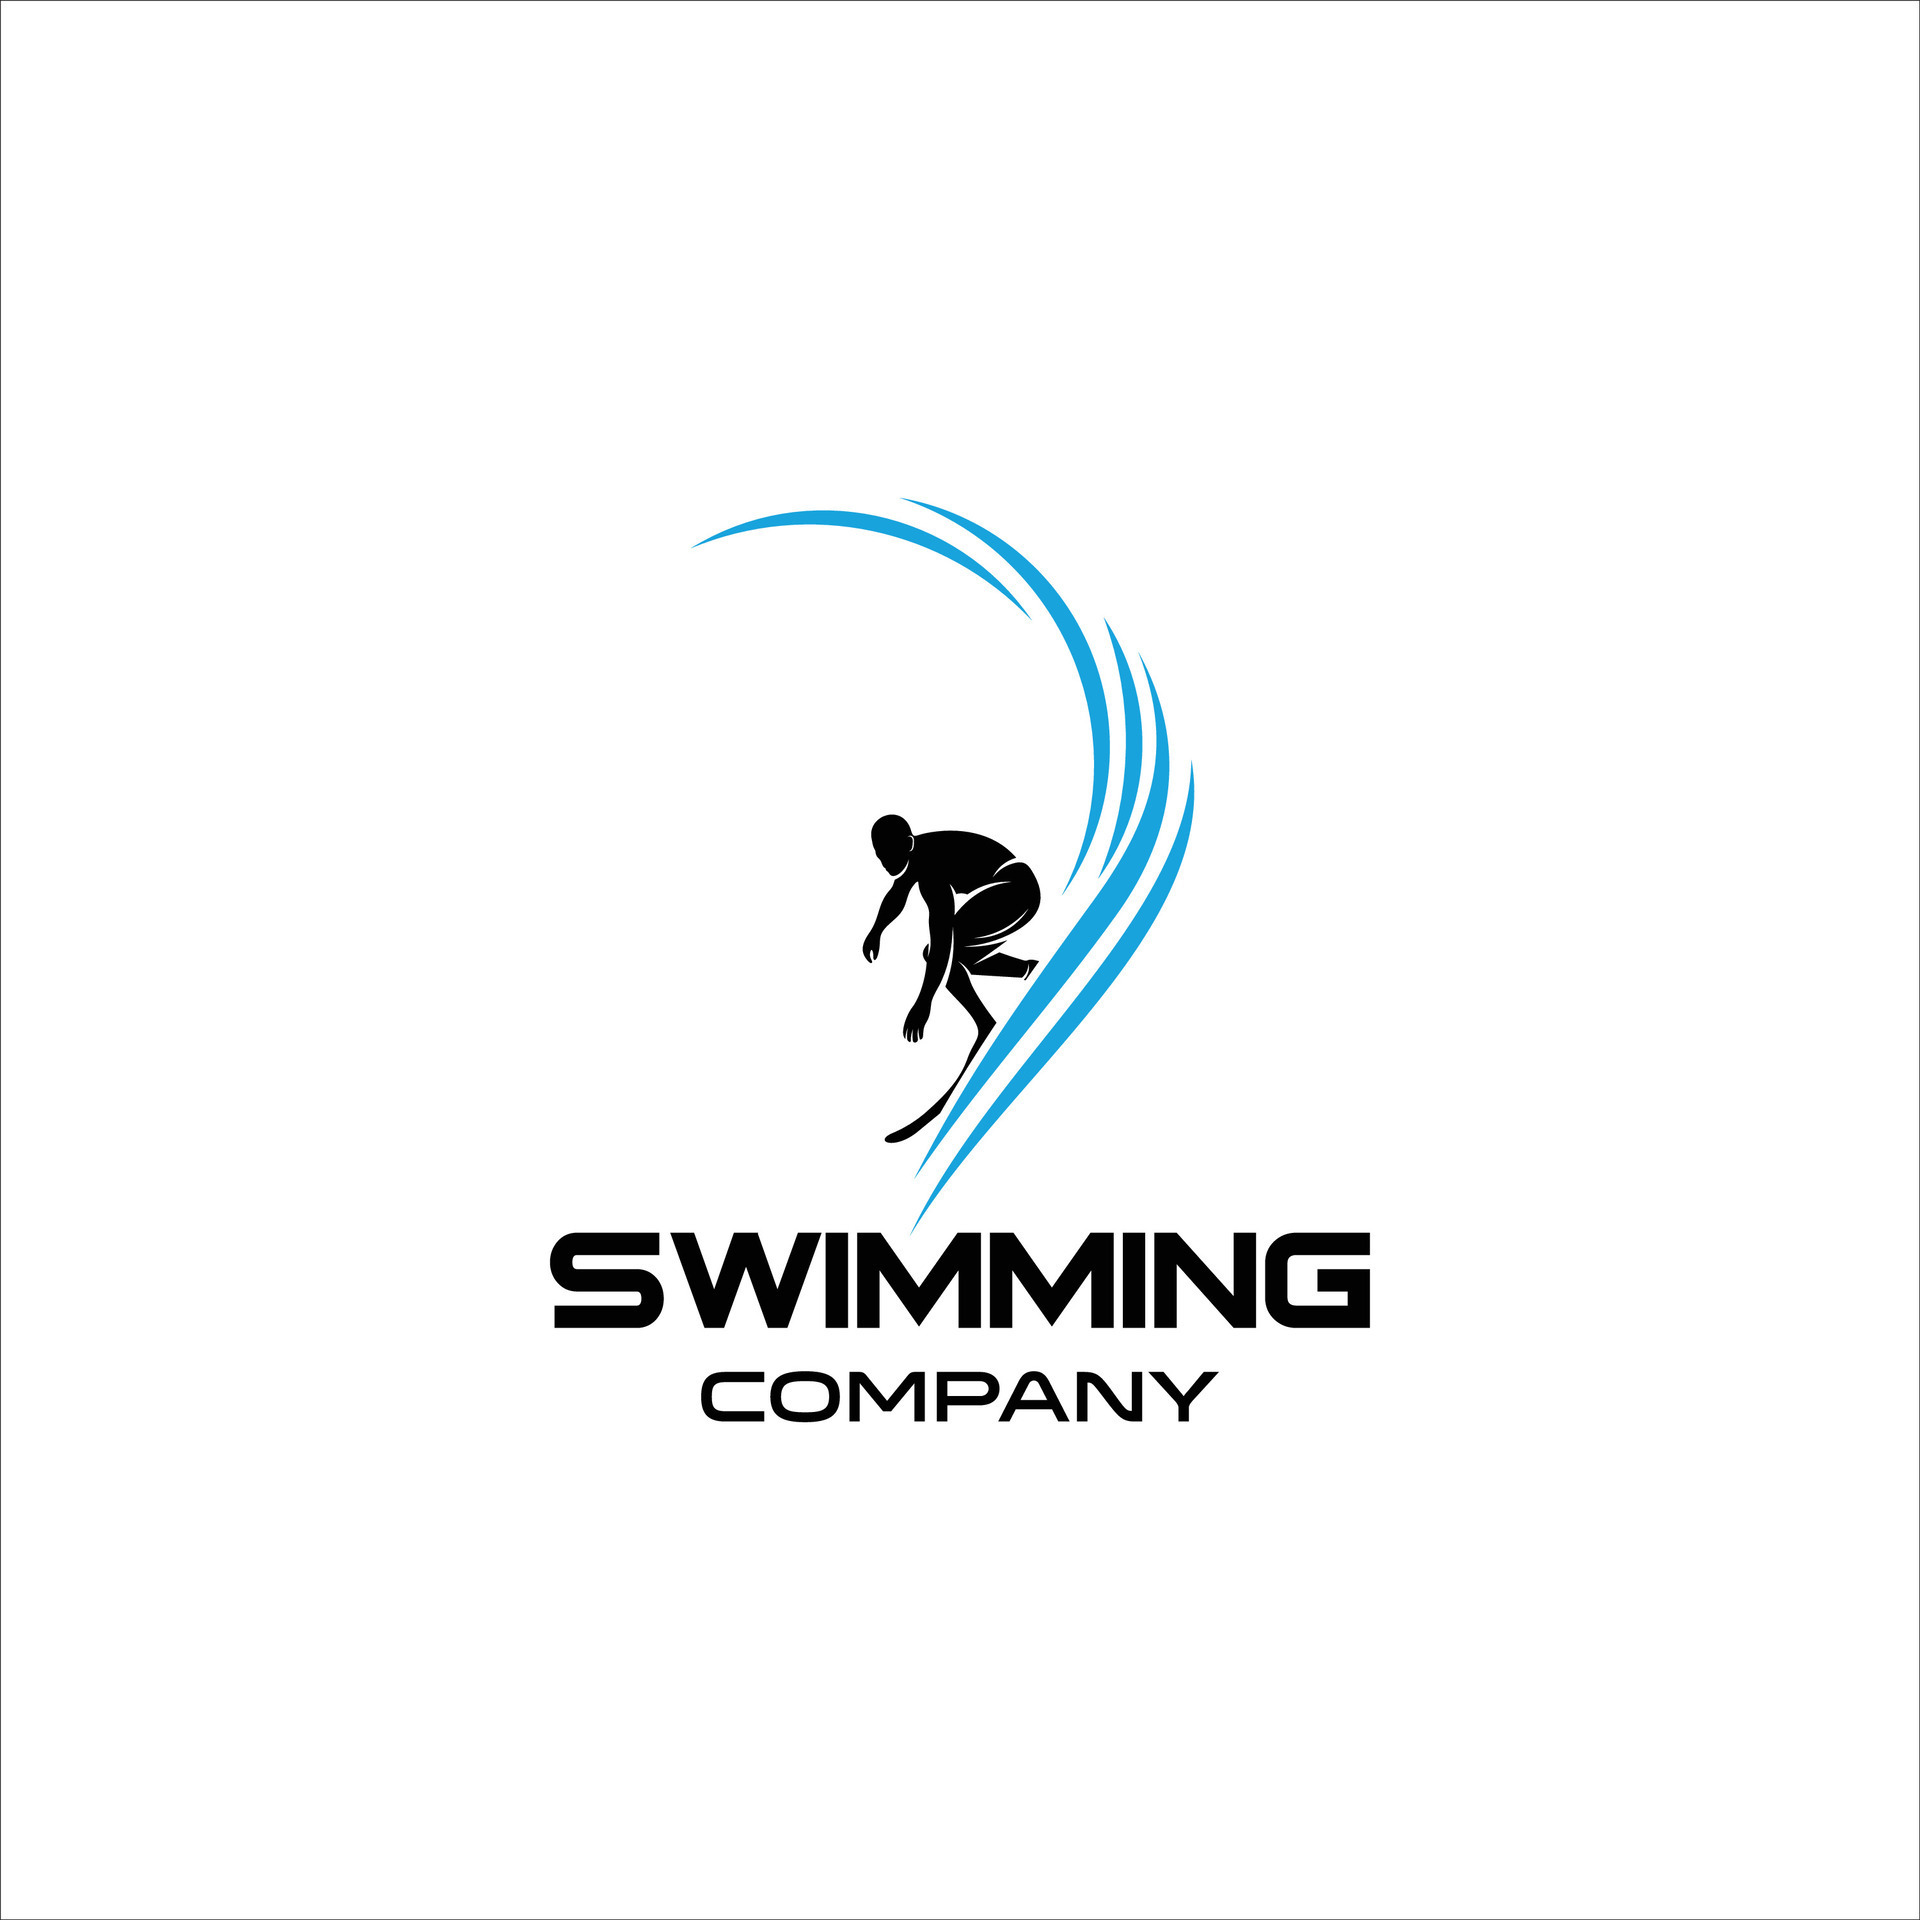 Swimming company logo 35726112 Vector Art at Vecteezy